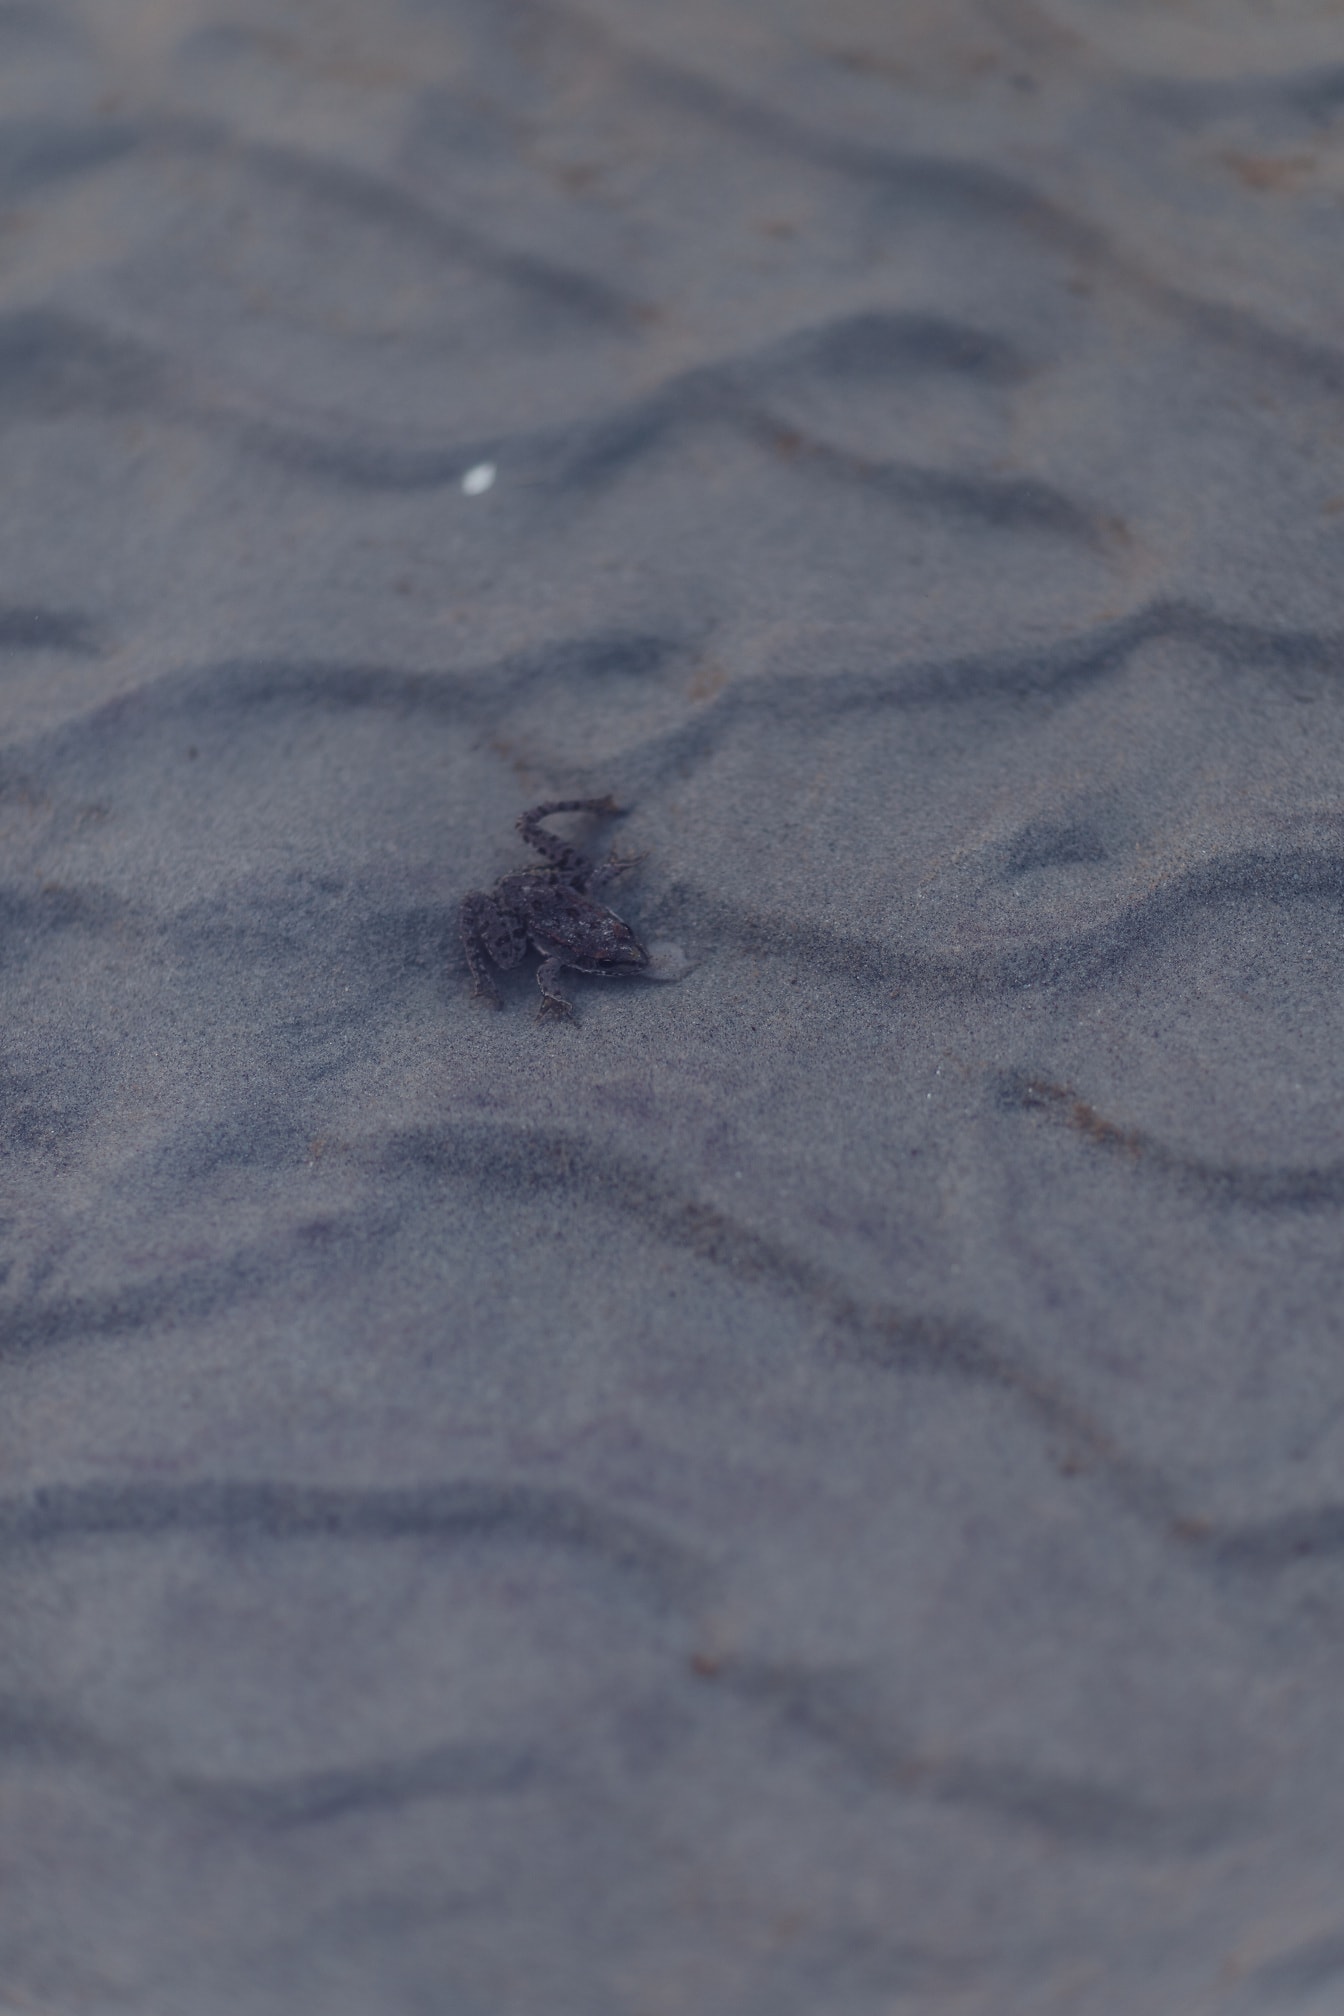 Broasca maro mică pe nisip subacvatic